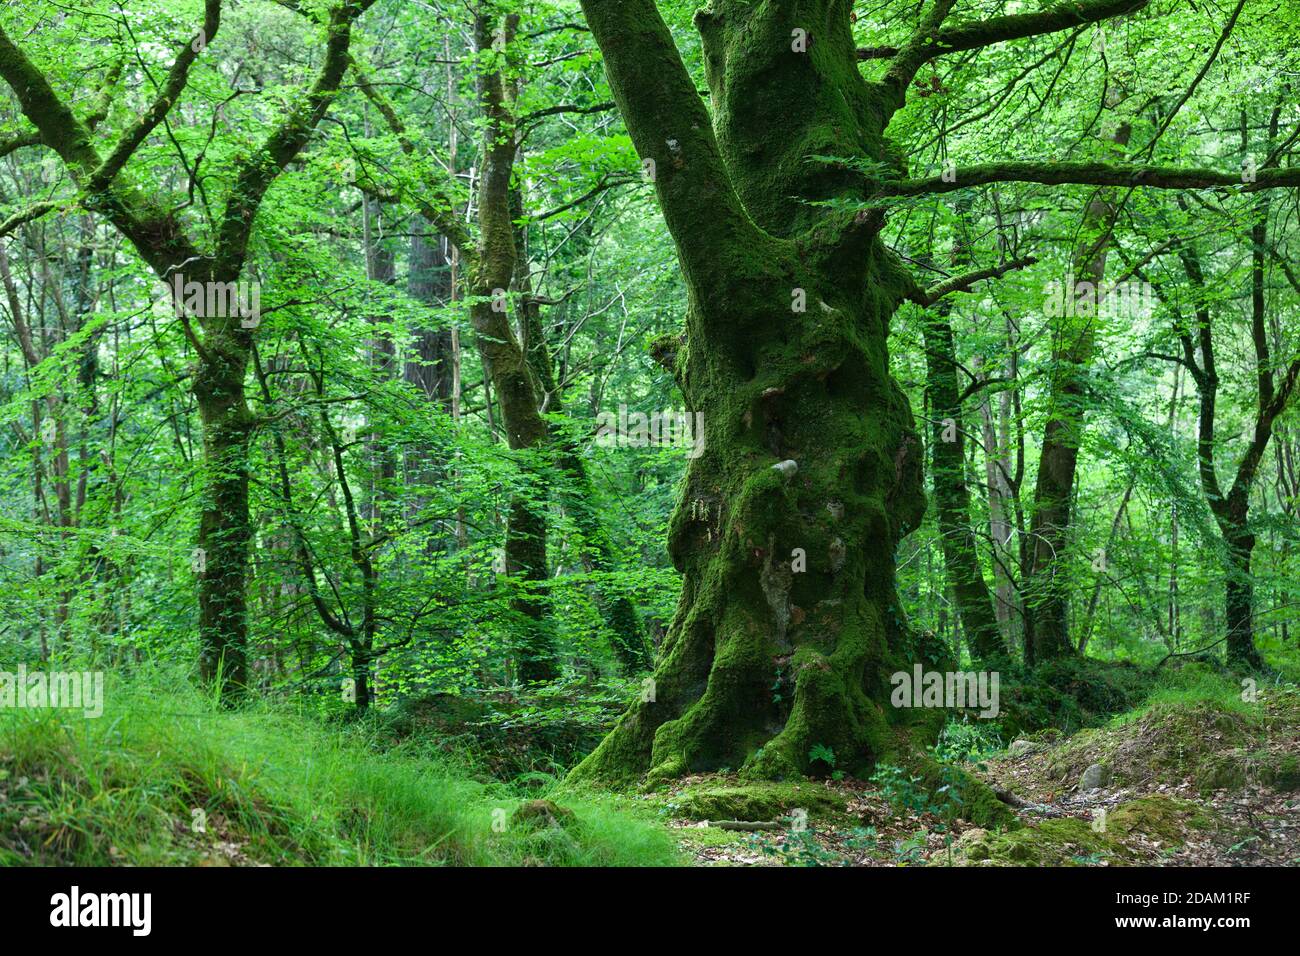 Hêtre dans la forêt pendant l'été. Péninsule du Cotentin Normandie France. Banque D'Images